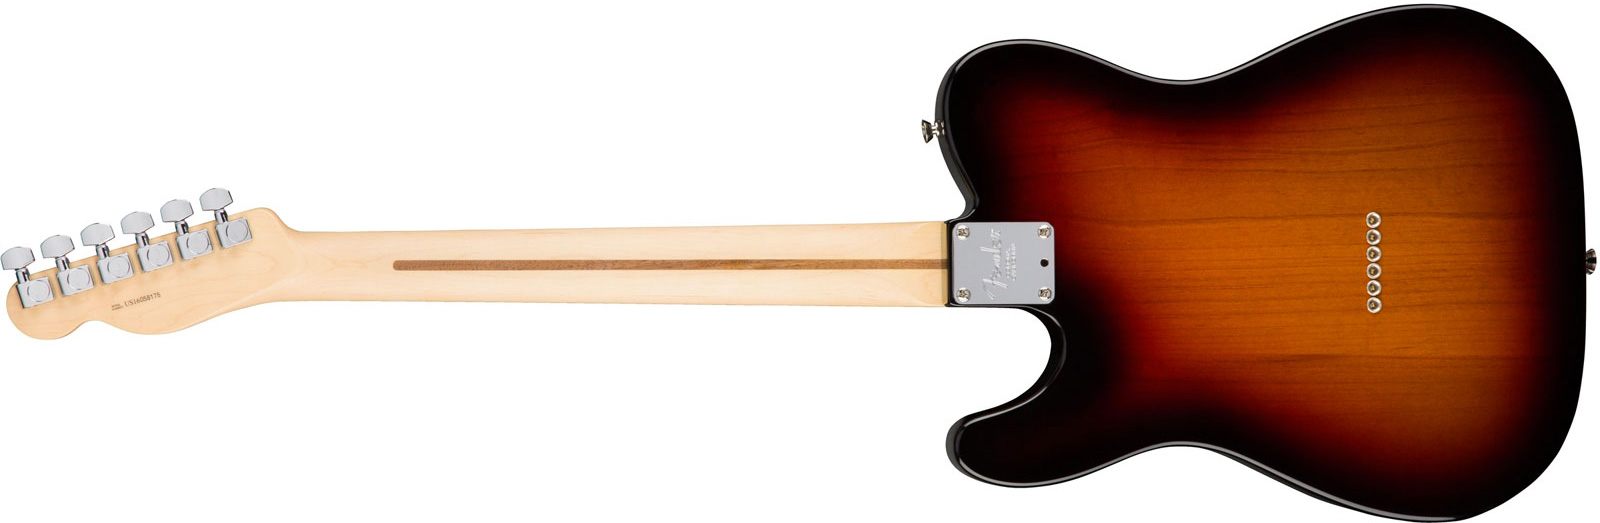 Fender Tele American Professional 2s Usa Mn - 3-color Sunburst - Guitare Électrique Forme Tel - Variation 2